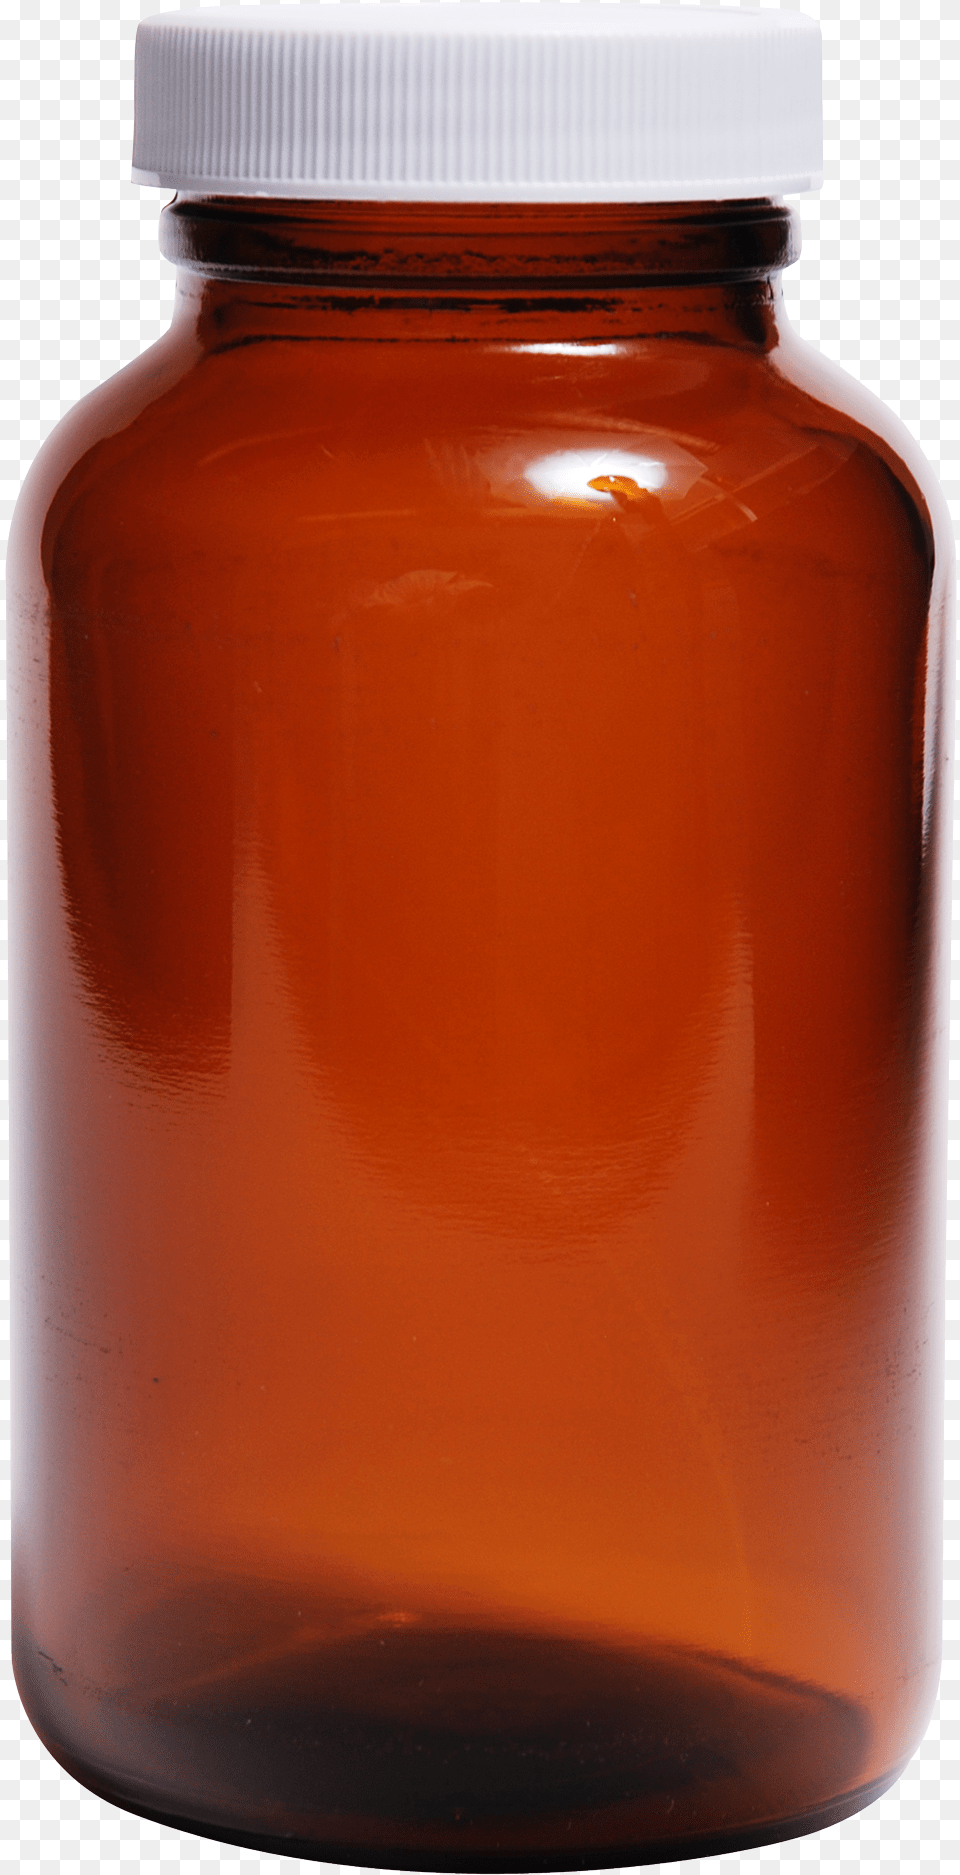 Red Glass Bottle, Jar, Alcohol, Beer, Beverage Png Image